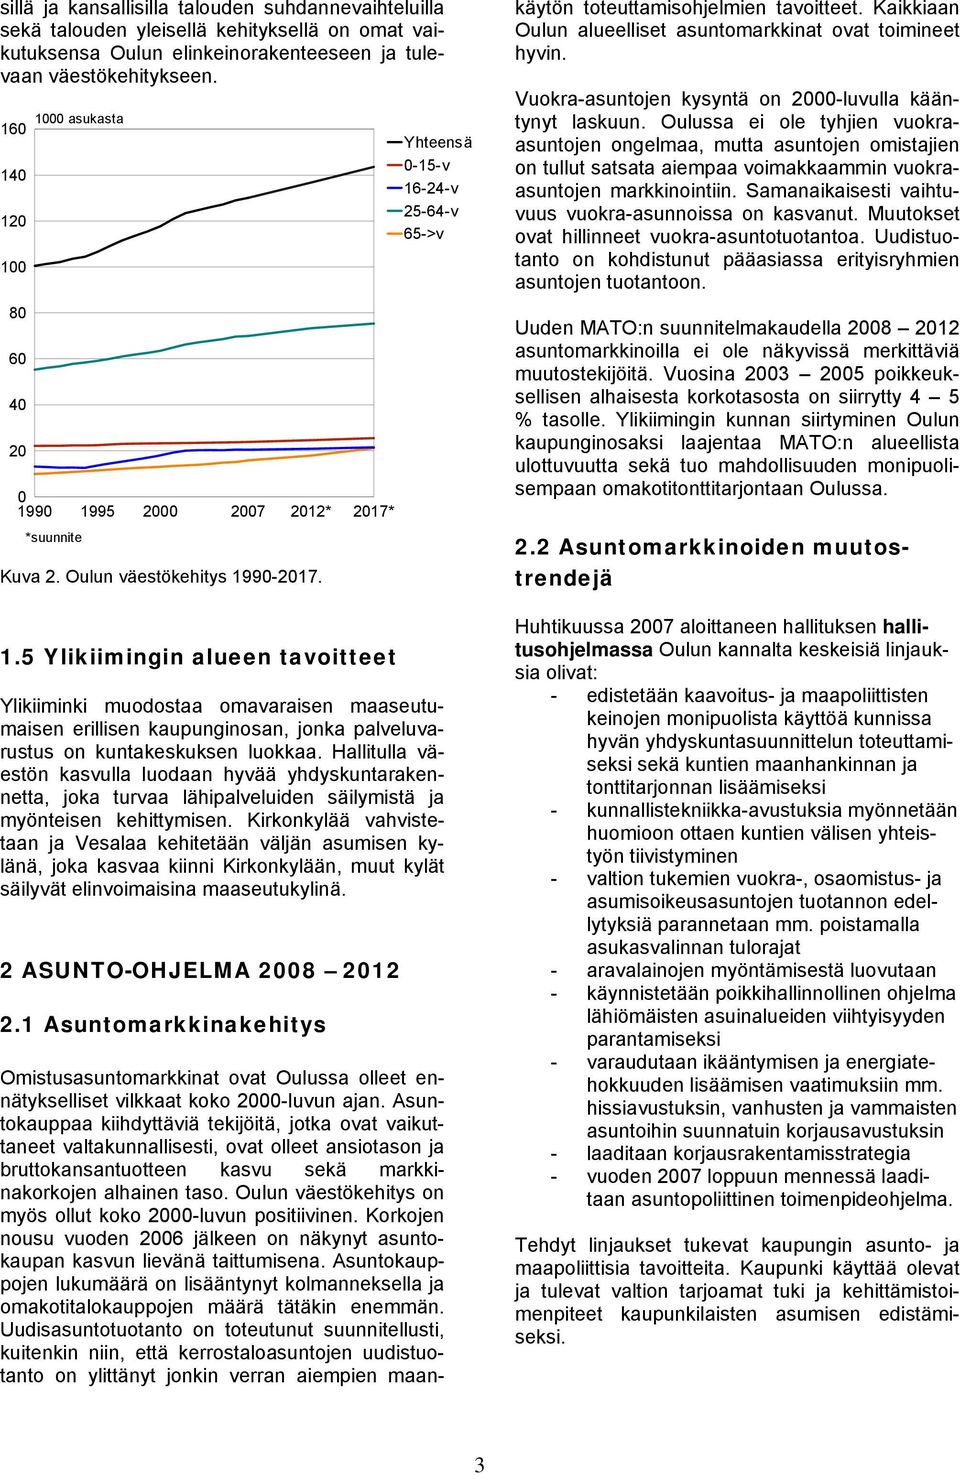 Oulun väestökehitys 1990-2017. Omistusasuntomarkkinat ovat Oulussa olleet ennätykselliset vilkkaat koko 2000-luvun ajan.